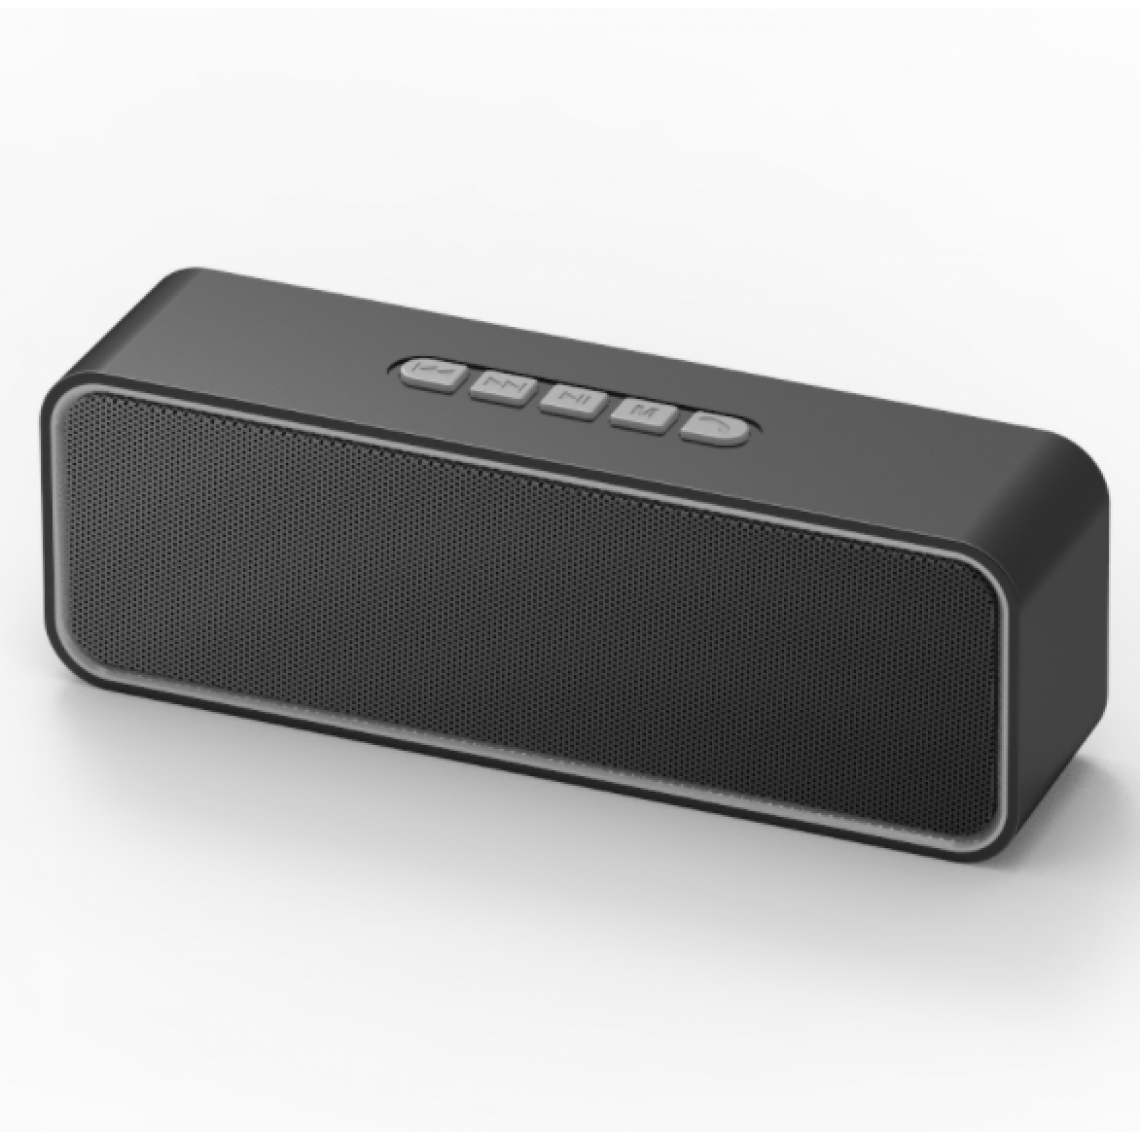 Chrono - Haut-parleur Bluetooth sans fil, haut-parleur portable Bluetooth 5.0 avec double basse, stéréo 3D, radio FM, fonction mains libres, batterie intégrée de 1500 mAh, 15 heures de lecture(Gris) - Enceintes Hifi